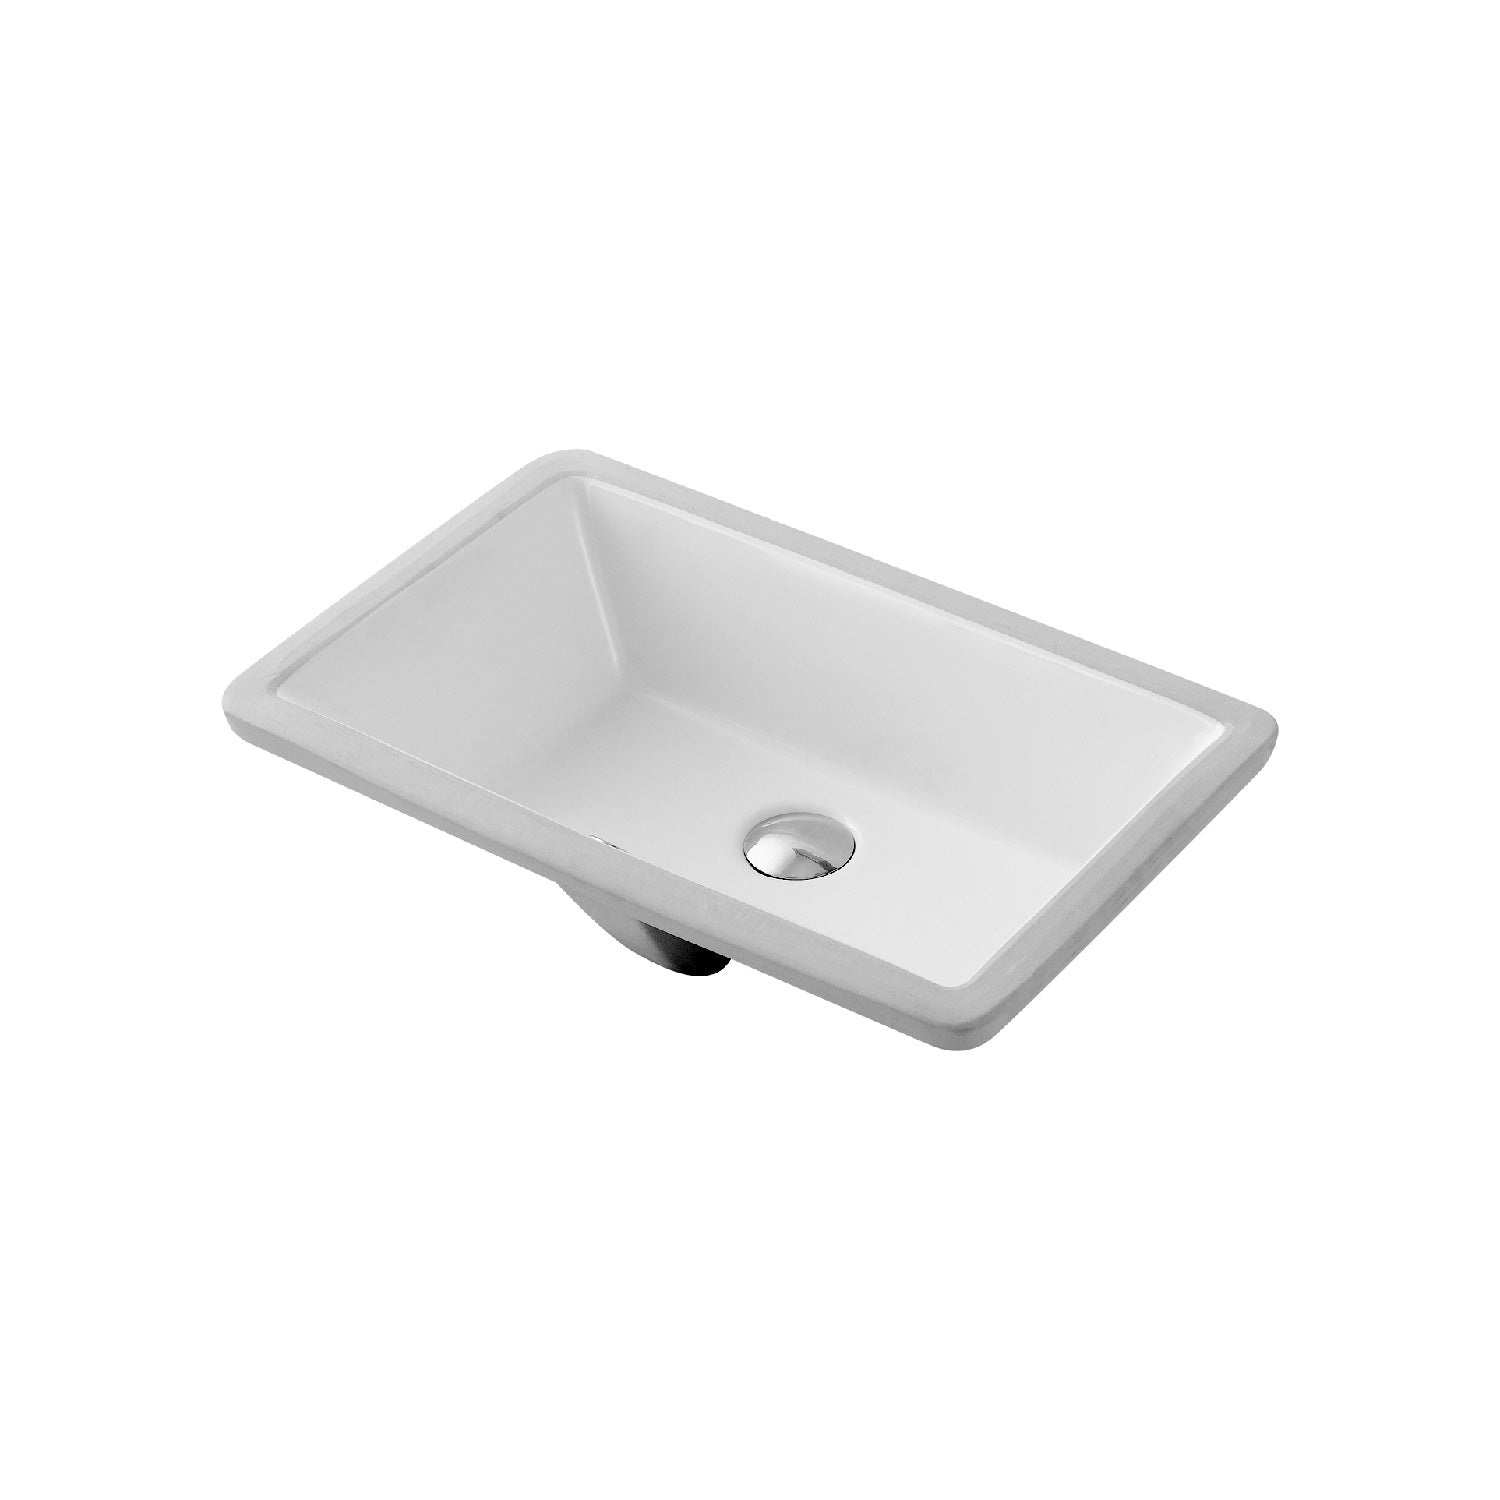 DAX Lavabo de baño rectangular de cerámica de un solo tazón, acabado blanco, 20-11/16" x 13-3/4 x 7-1/4 pulgadas (BSN-CL2023)